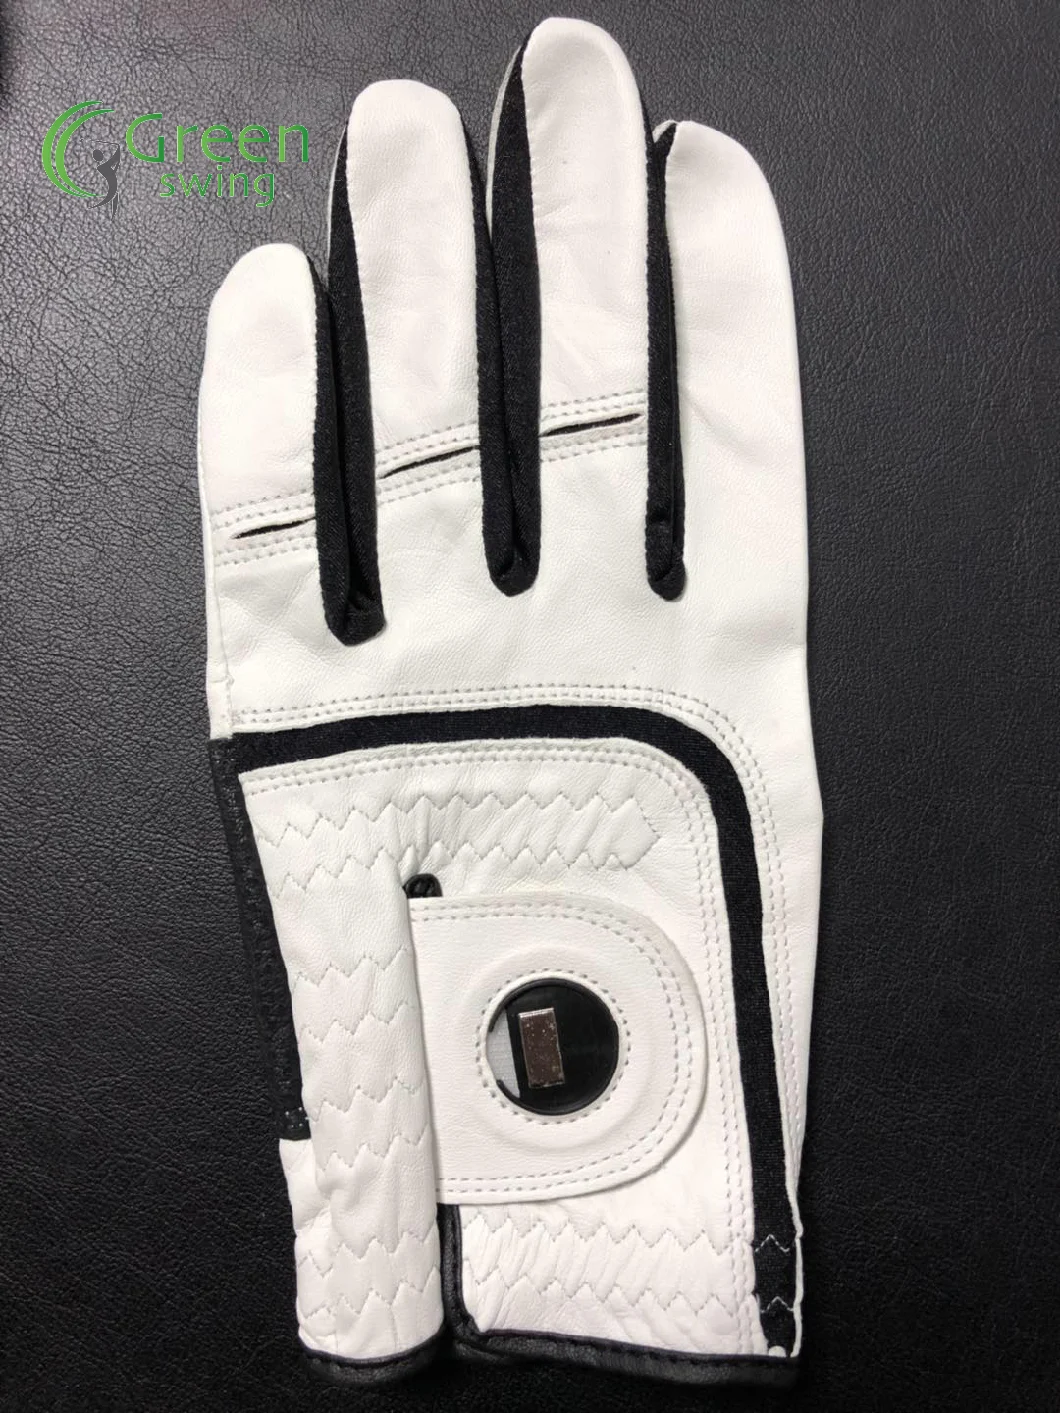 Best Quality Master Grip Golf Gloves